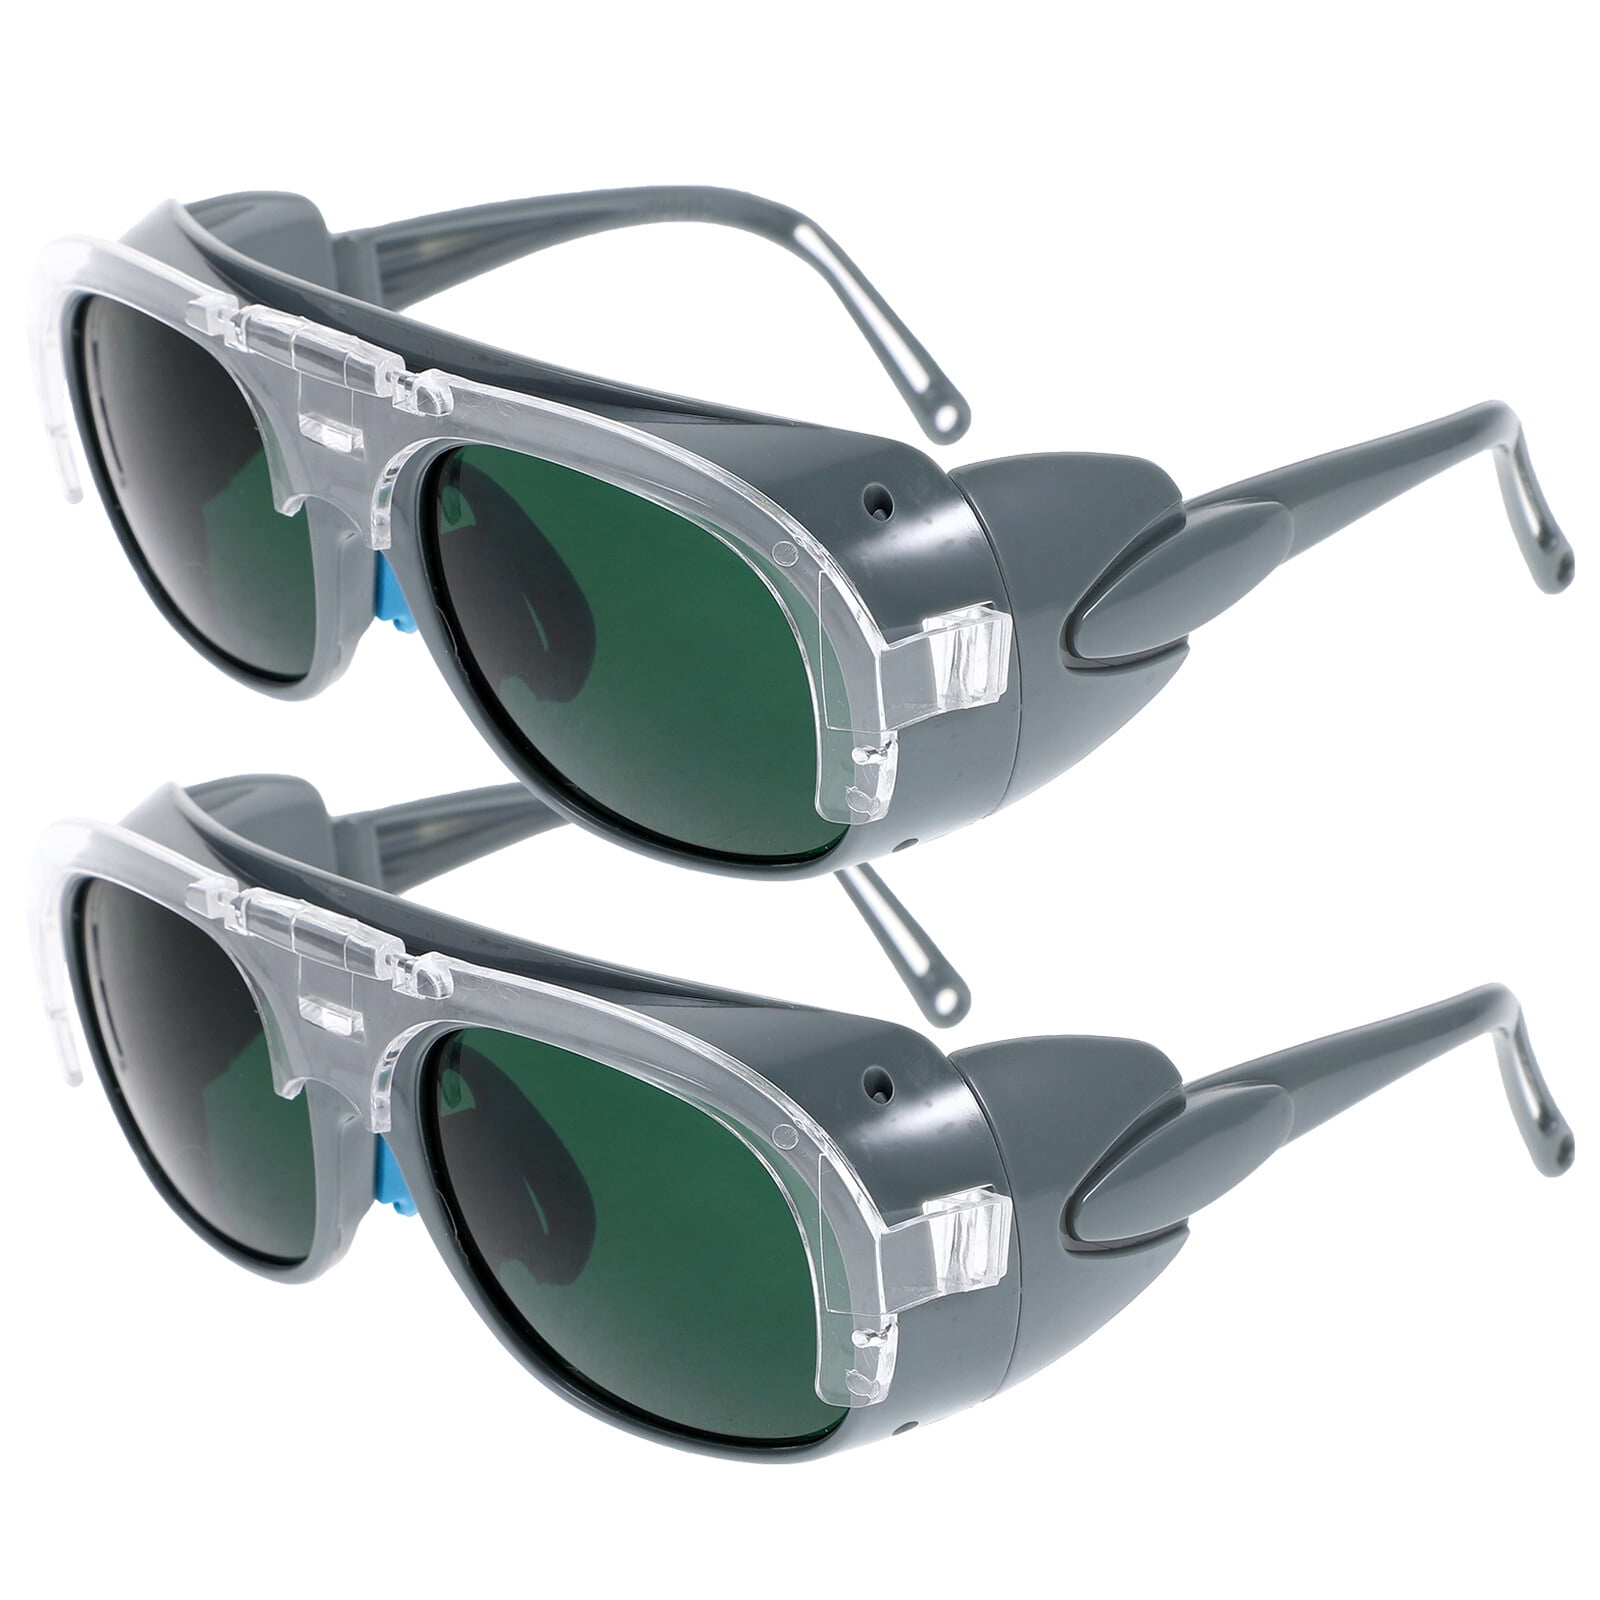 Buy Welding goggles Uvex astrospec 2.0 9164 online